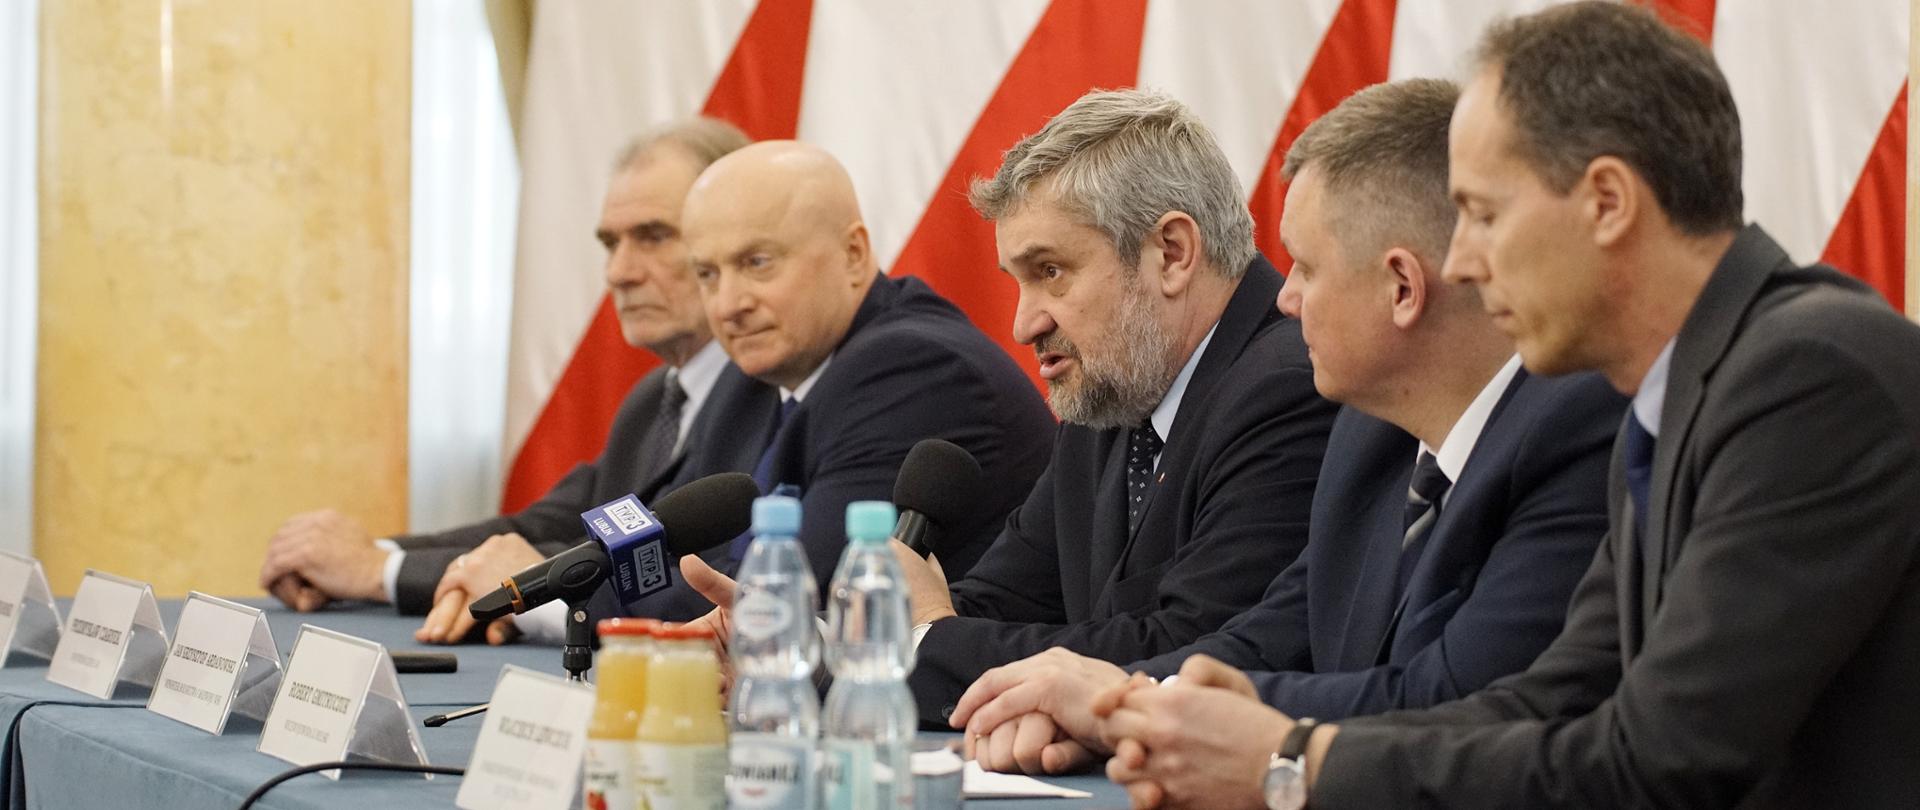 Minister podczas spotkania w Lublinie